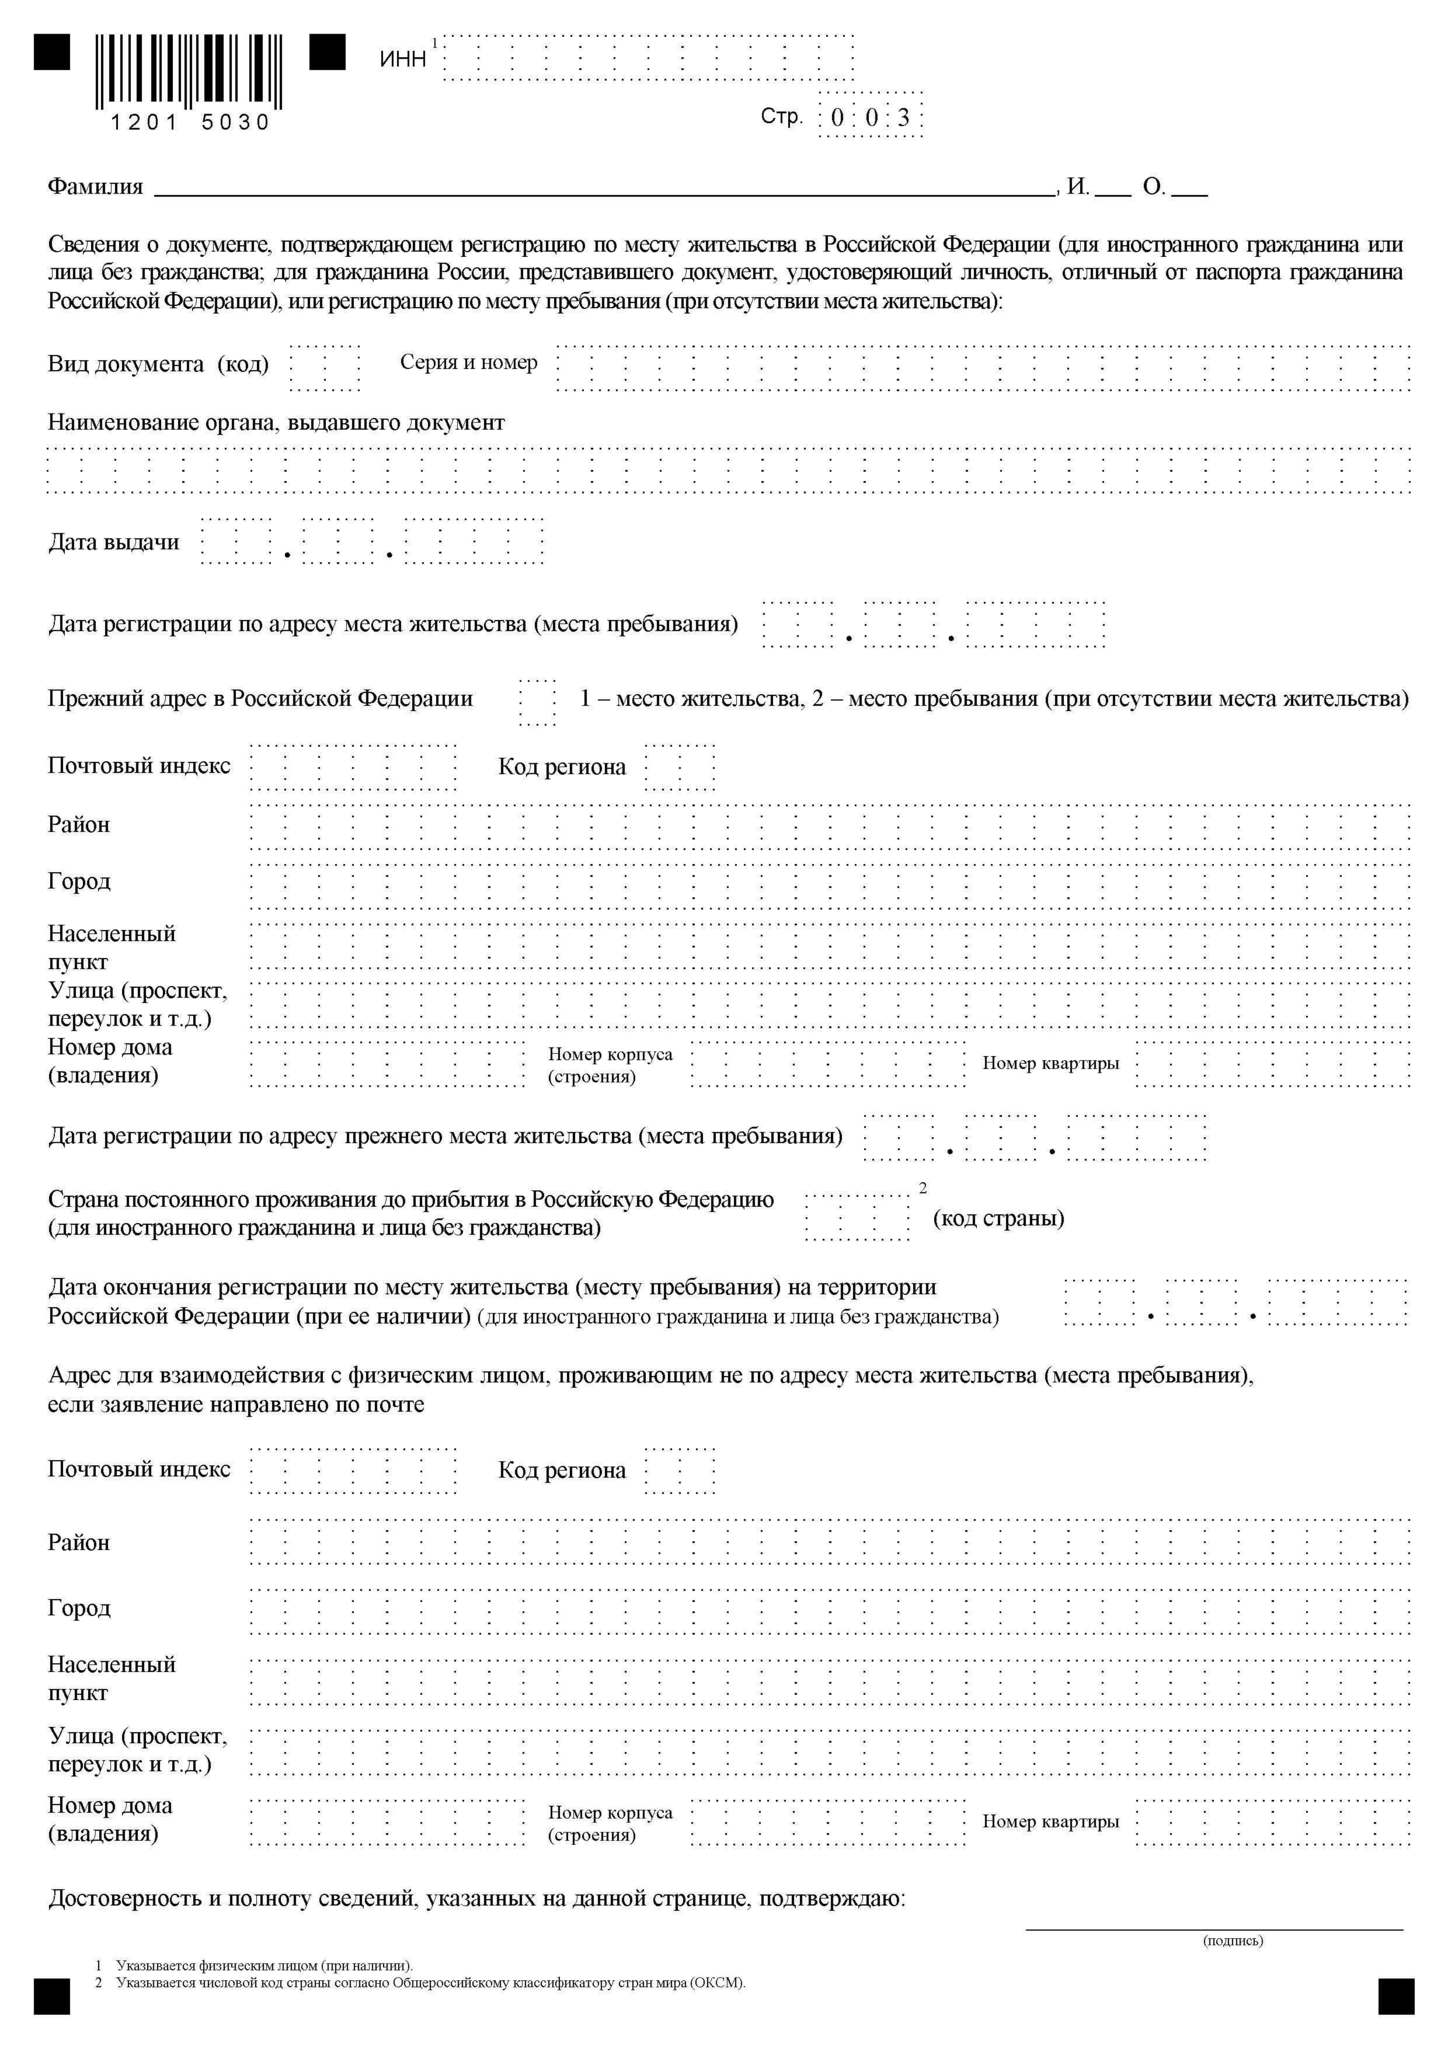 Инн для иностранного гражданина: правила получения и документы, образец заявления